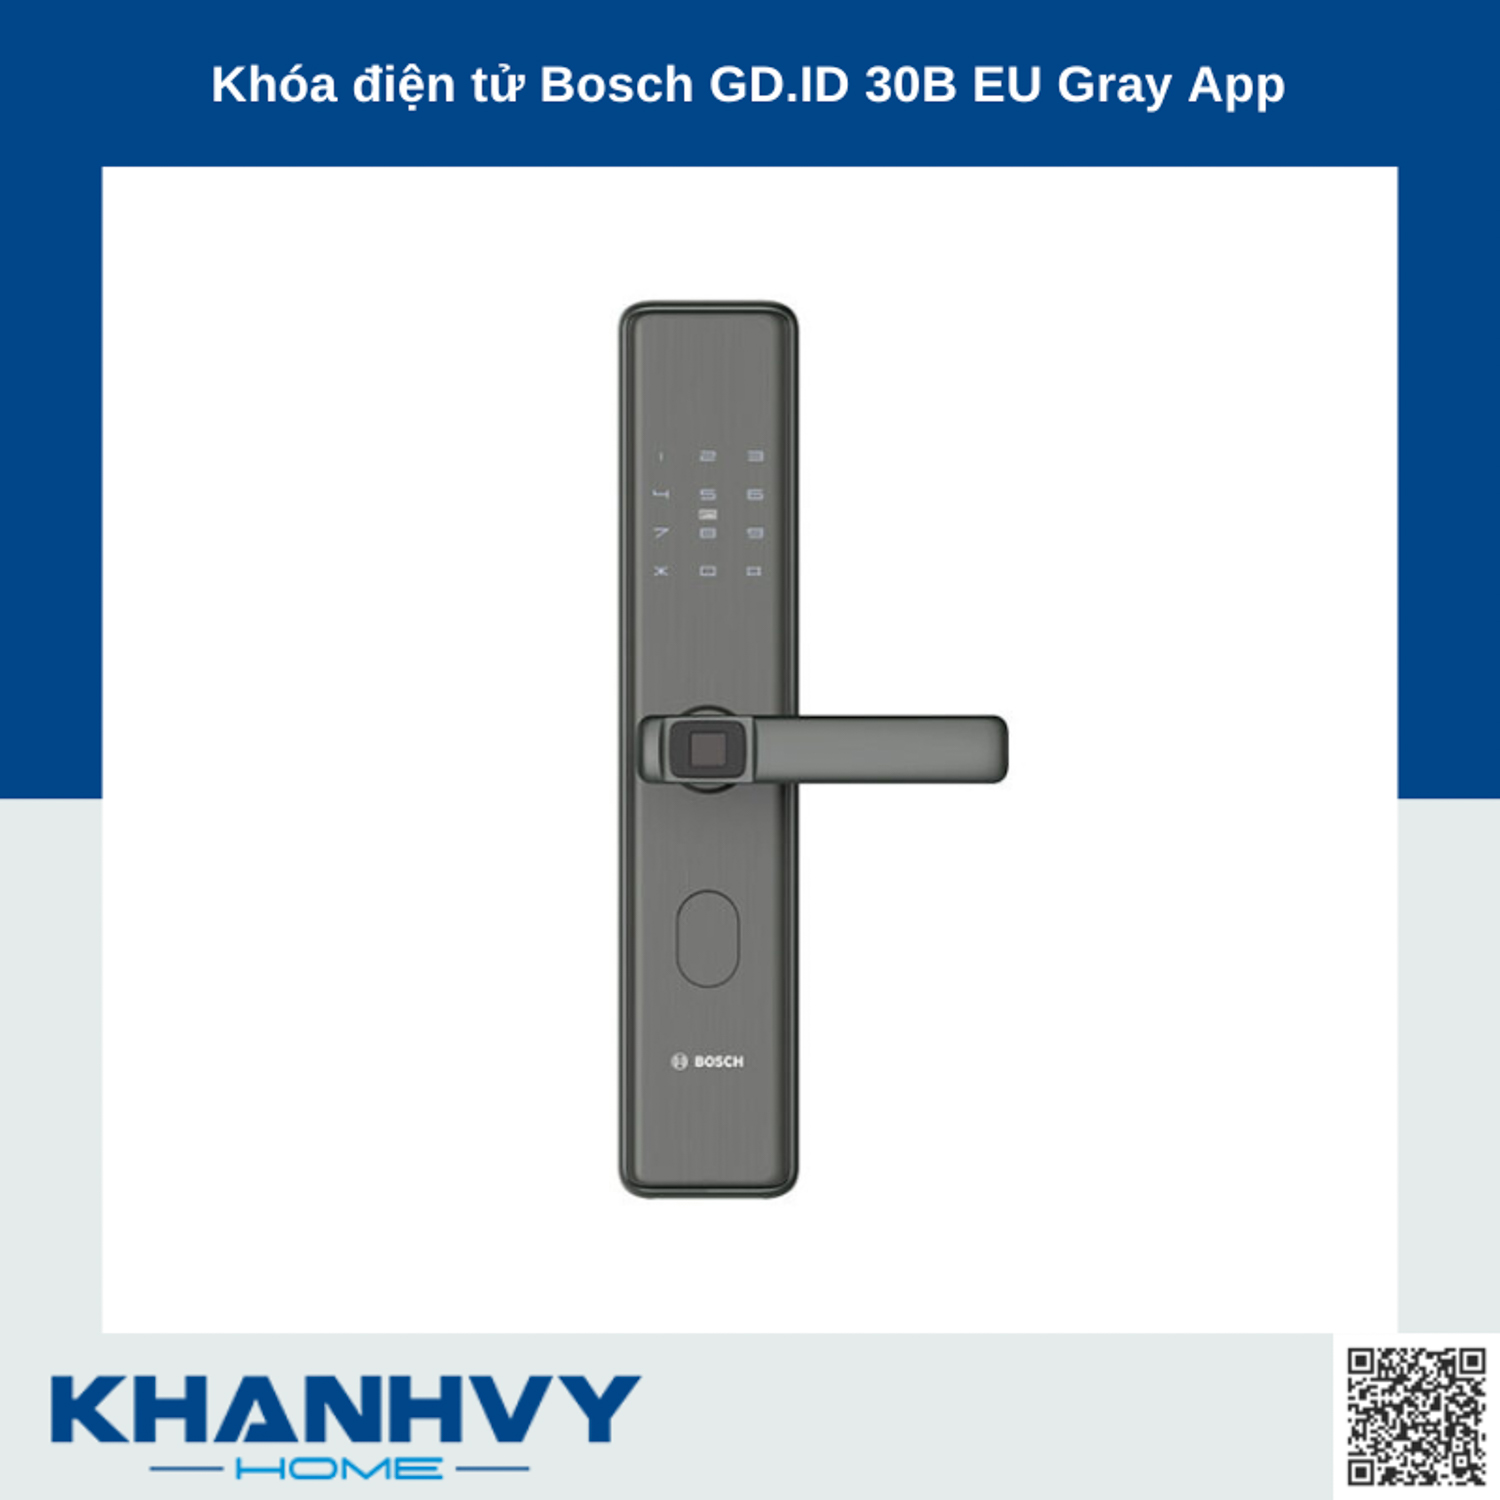 Khóa điện tử Bosch GD.ID 30B EU Gray App tích hợp nhiều tính năng hiện đại